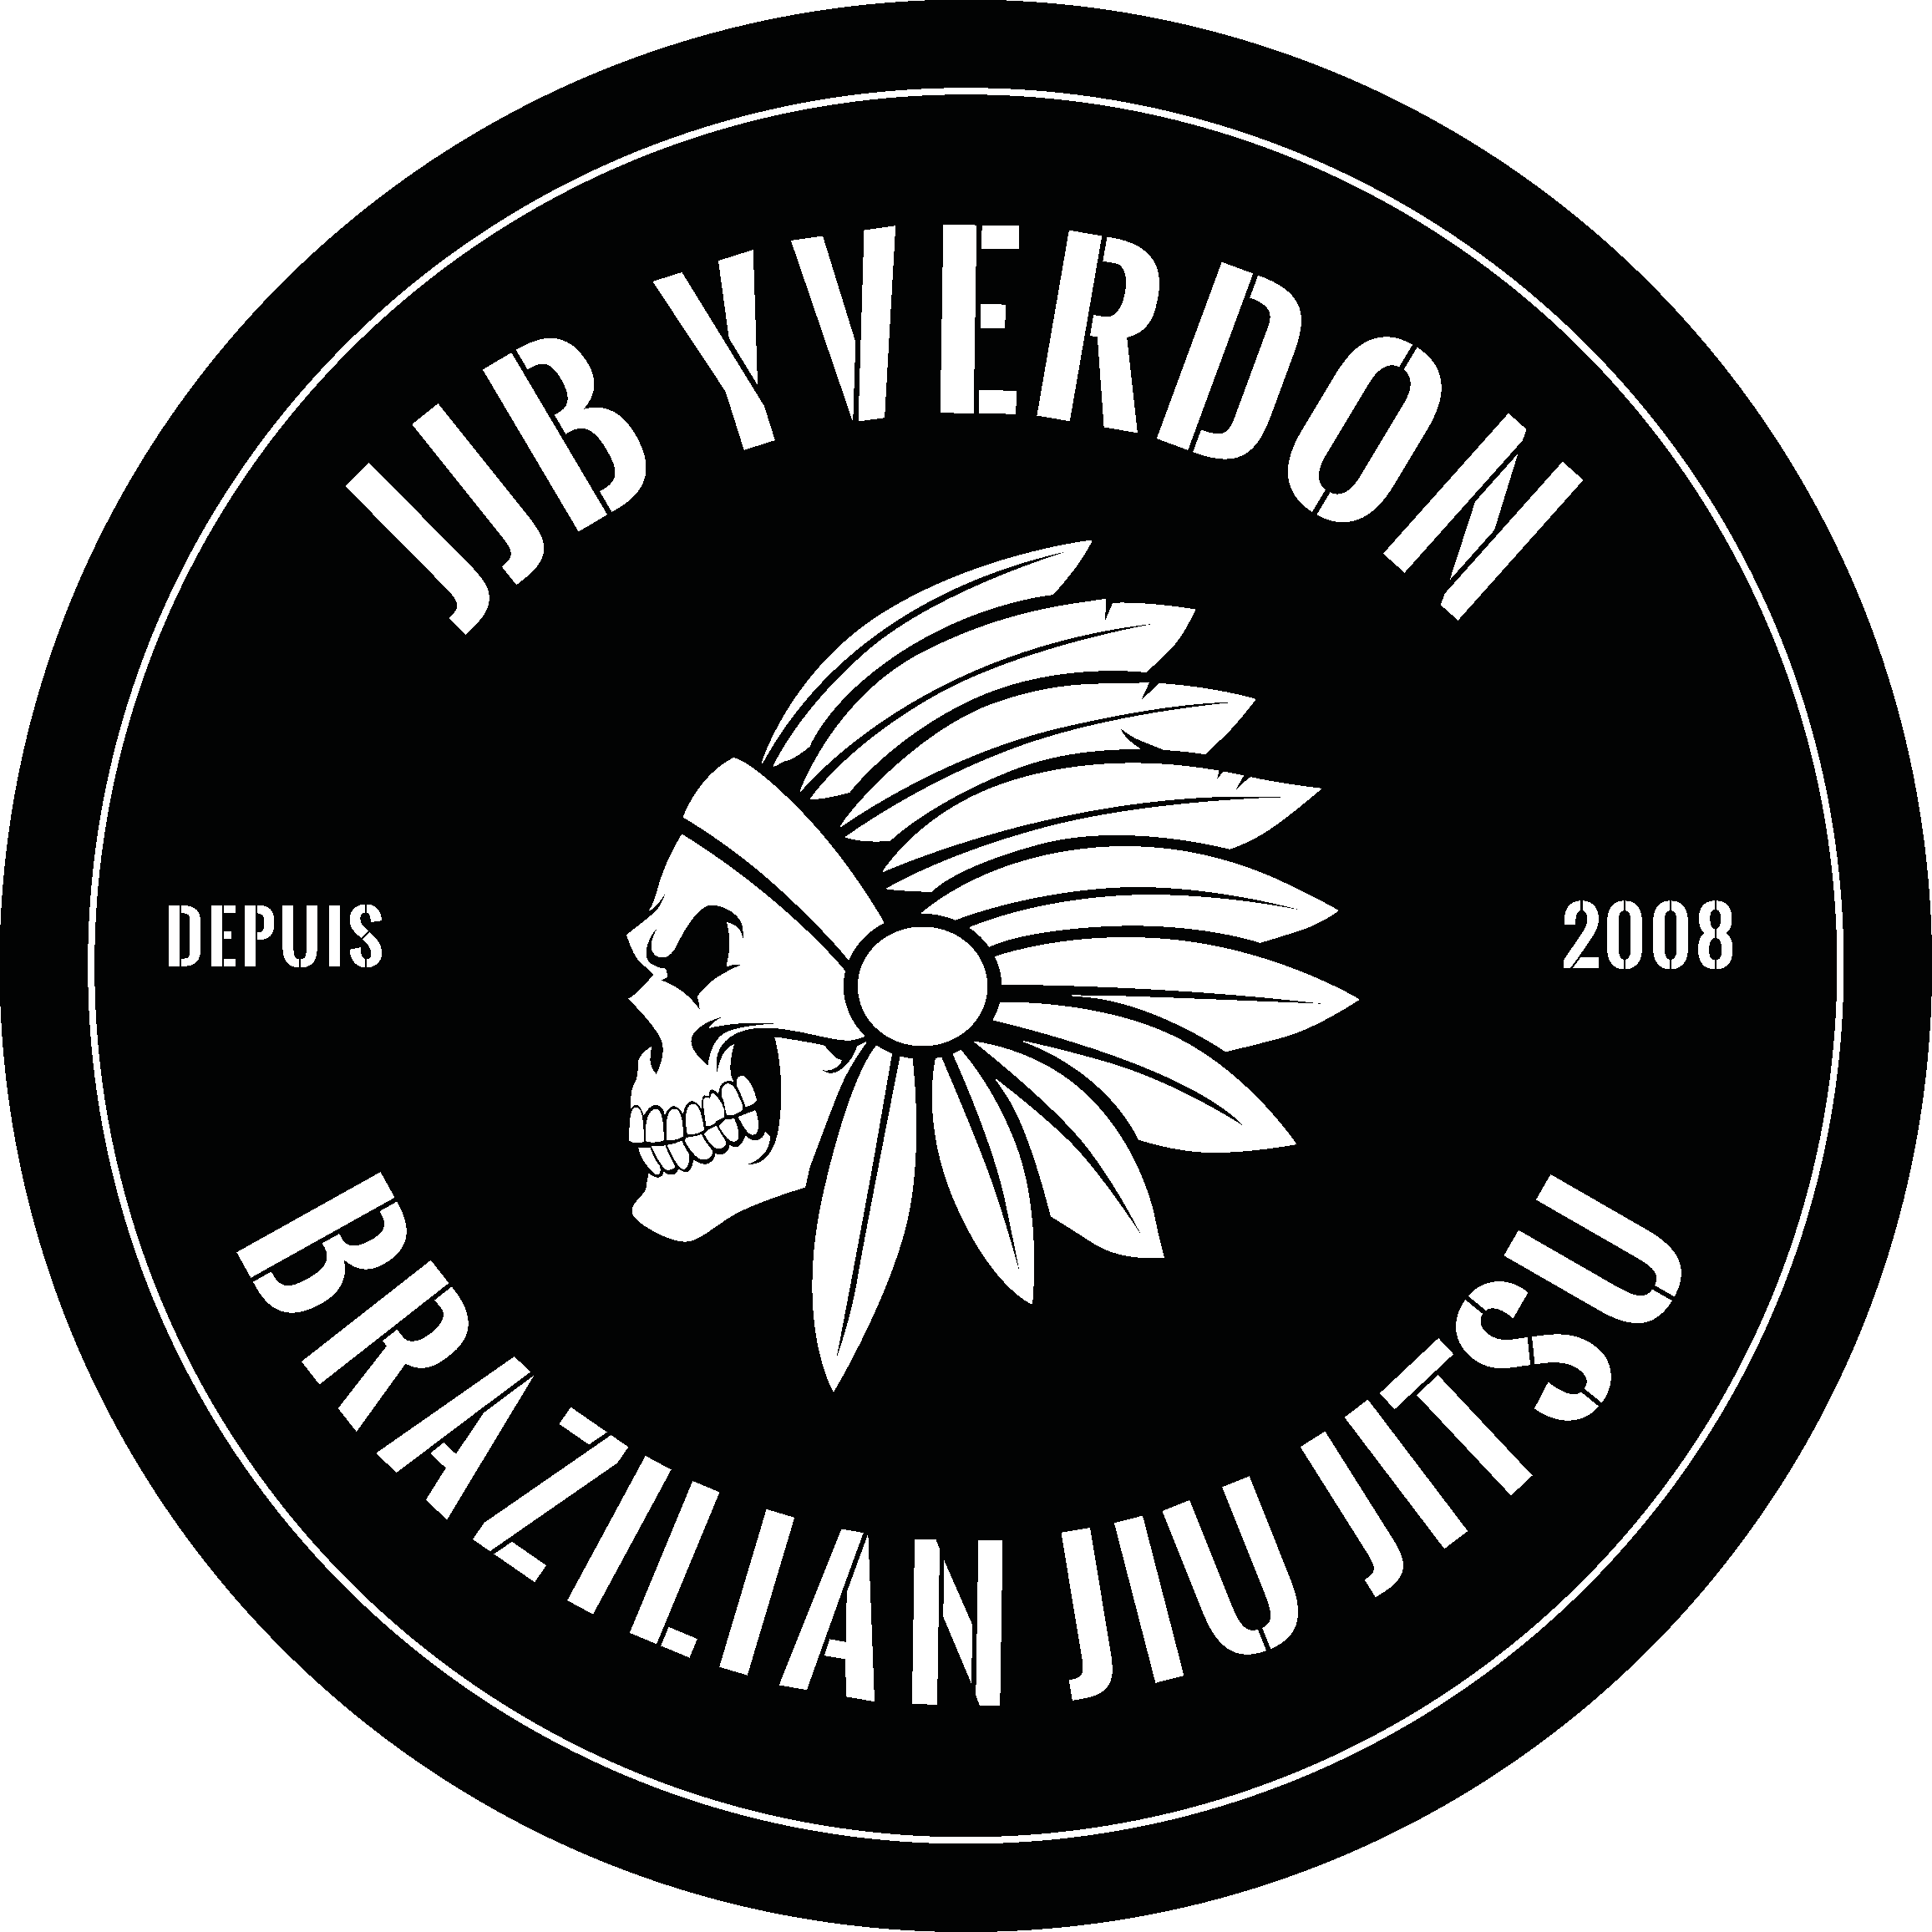 logo of JJB Yverdon